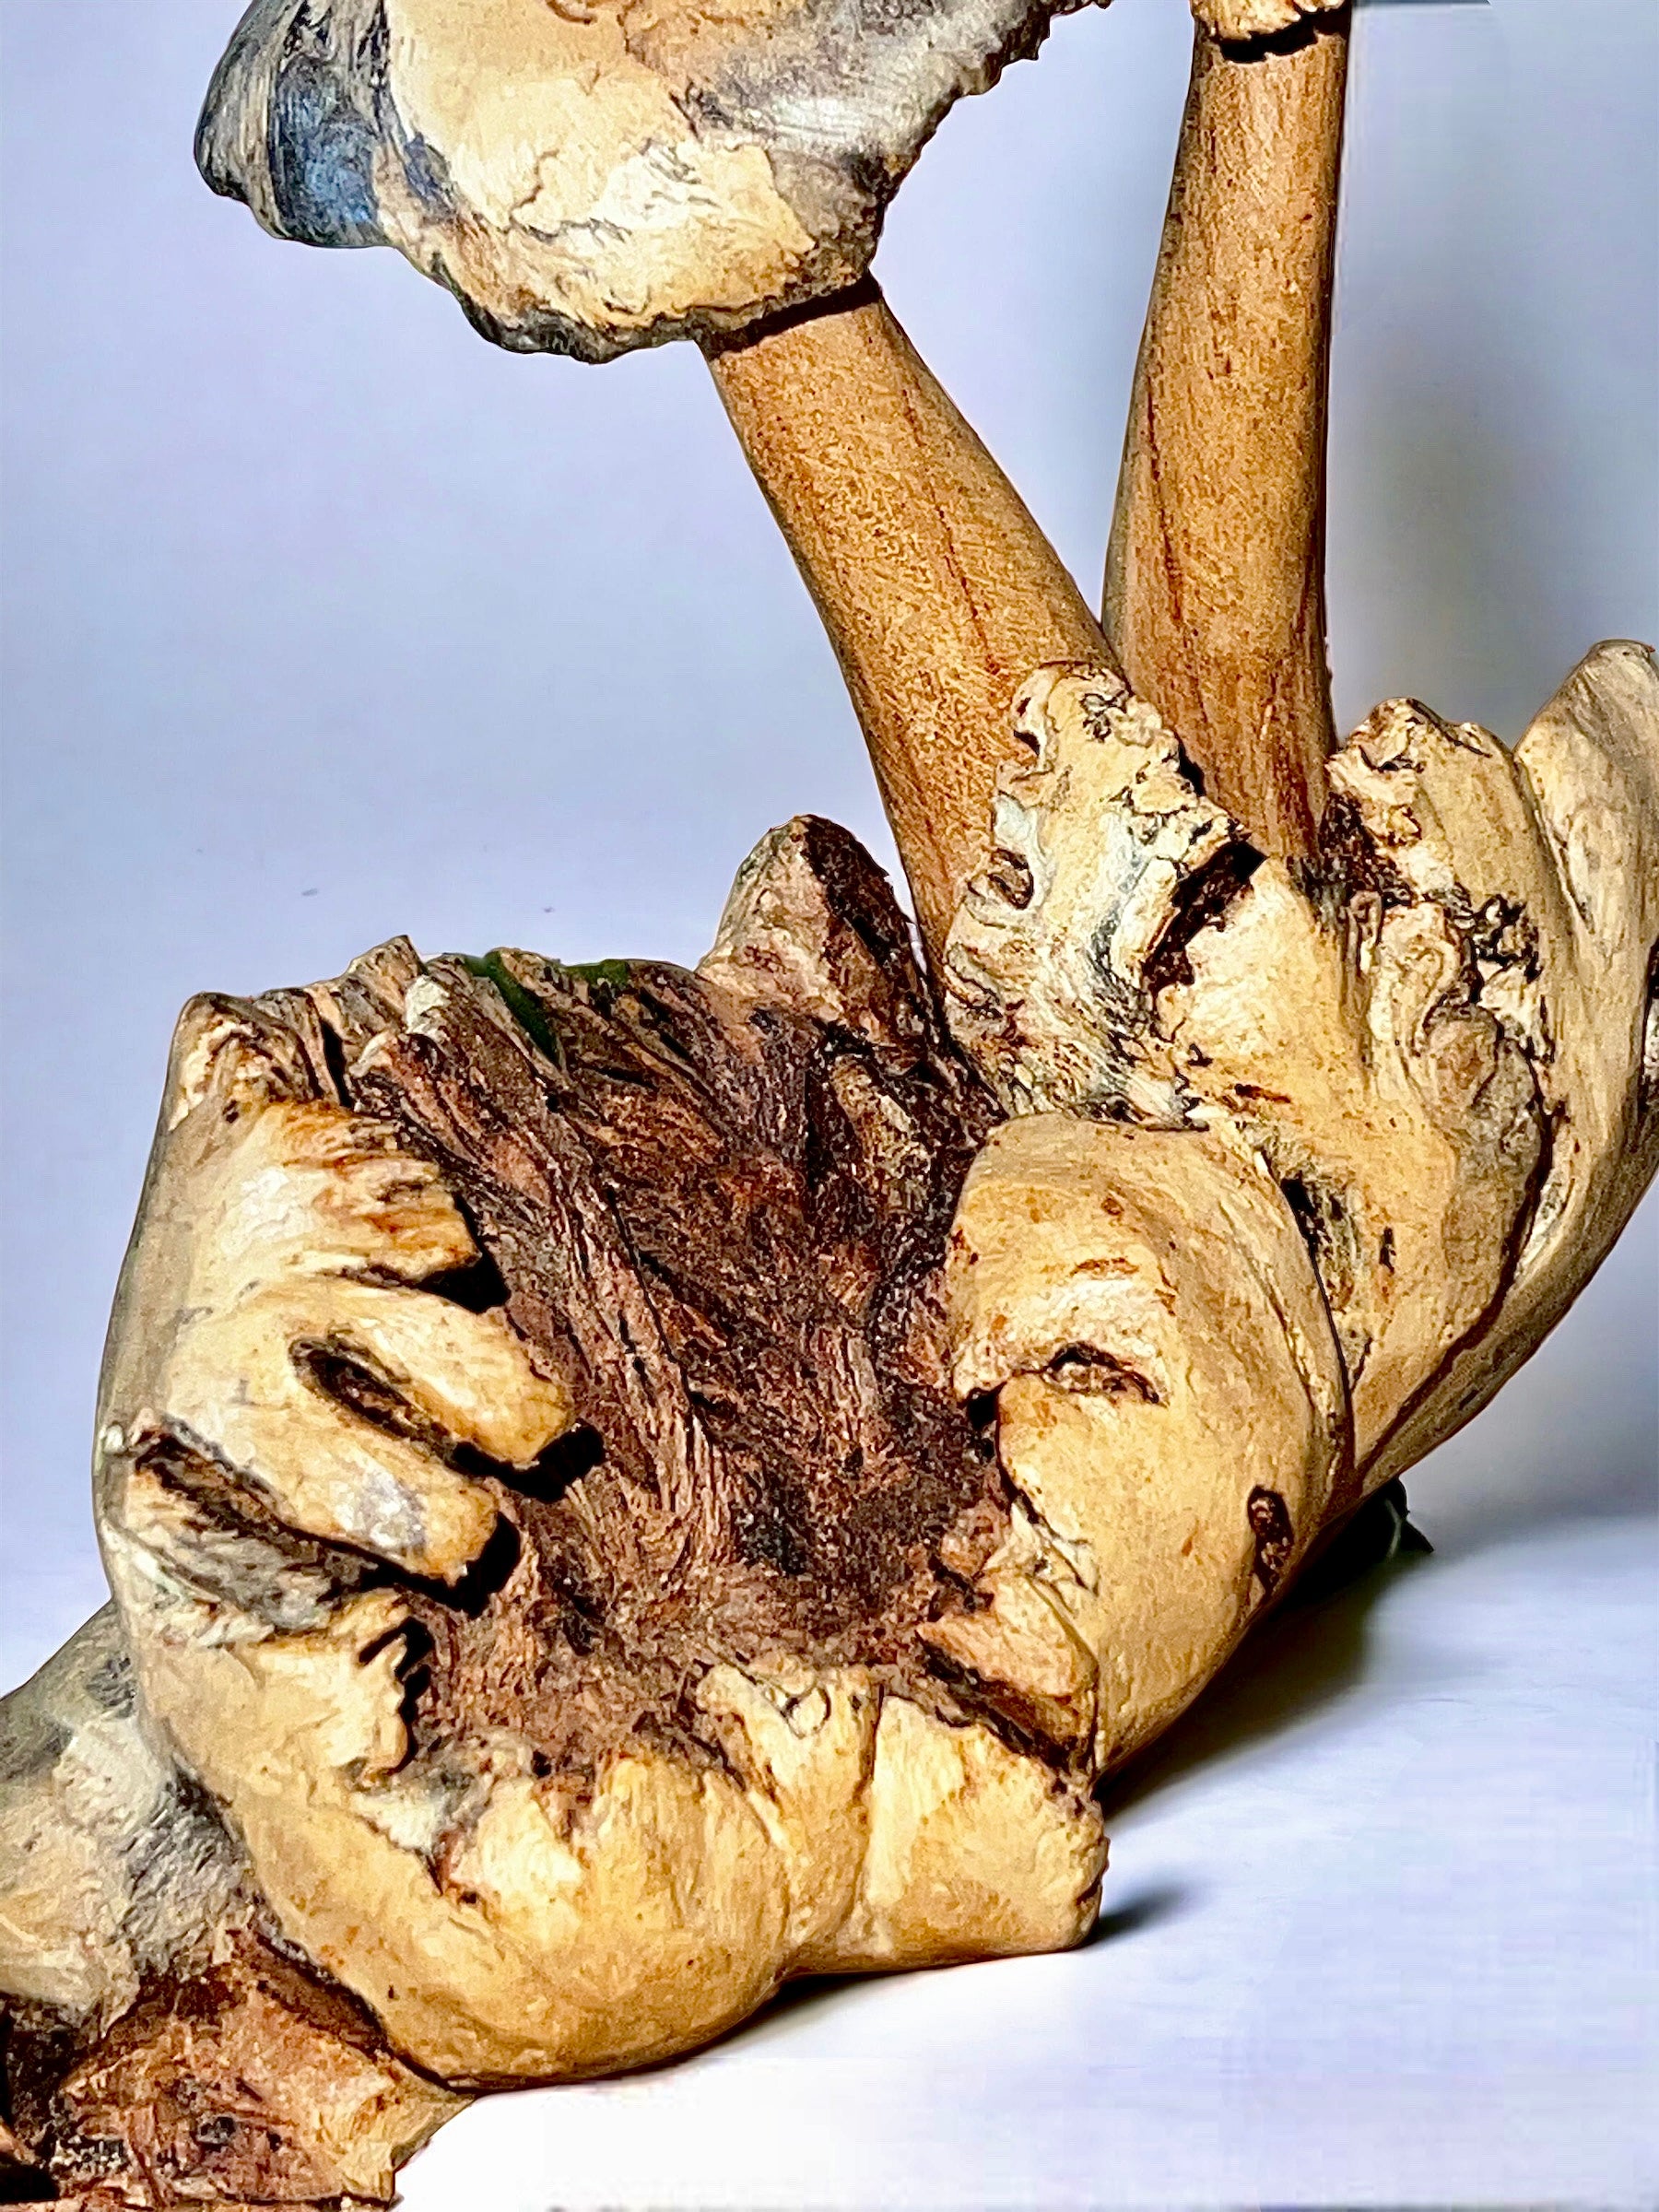 Burl Wood Mushroom 5 Toadstools Sculpture (Vintage)